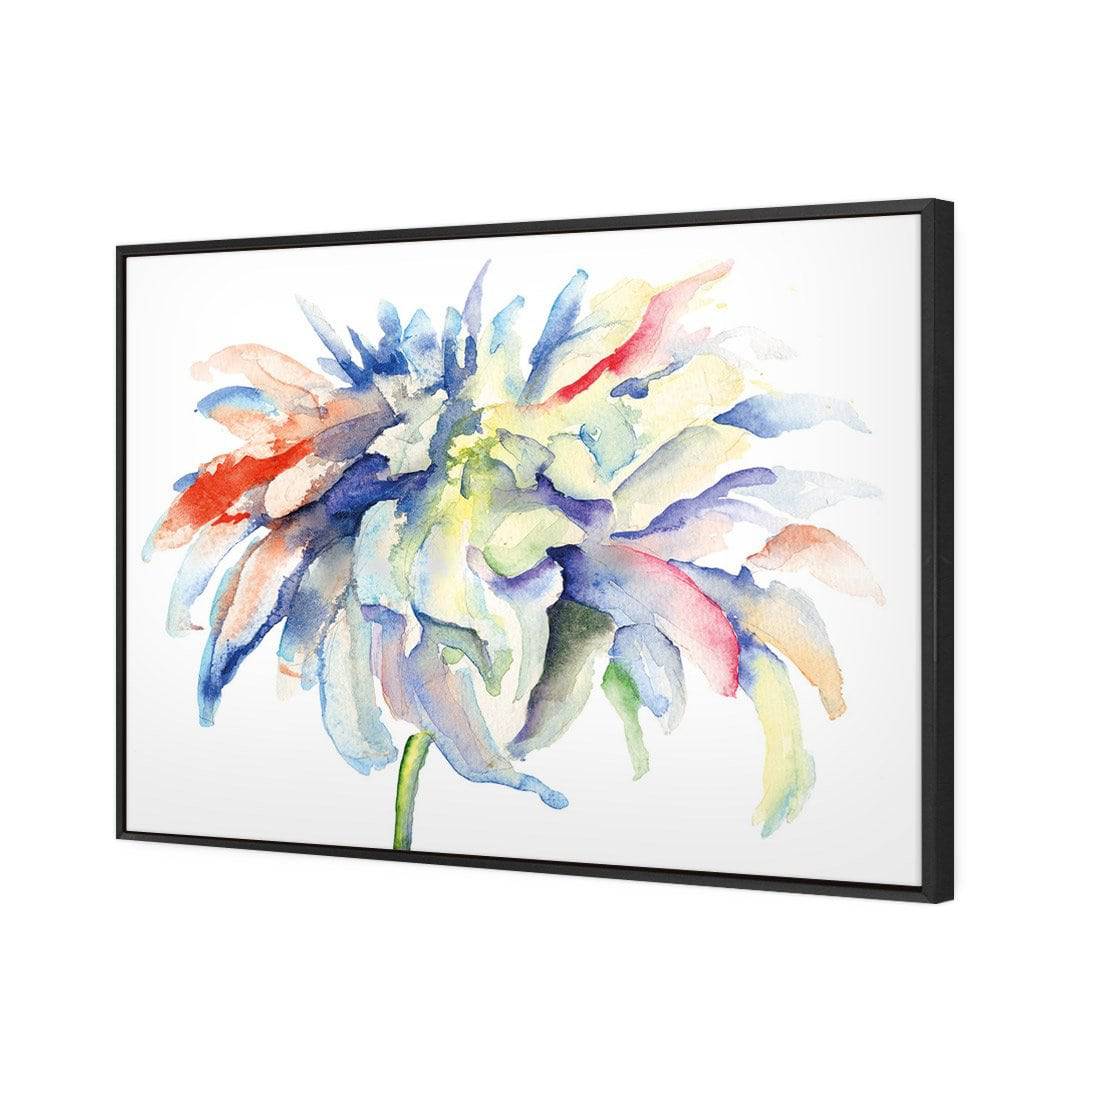 Fairy Floss Canvas Art-Canvas-Wall Art Designs-45x30cm-Canvas - Black Frame-Wall Art Designs